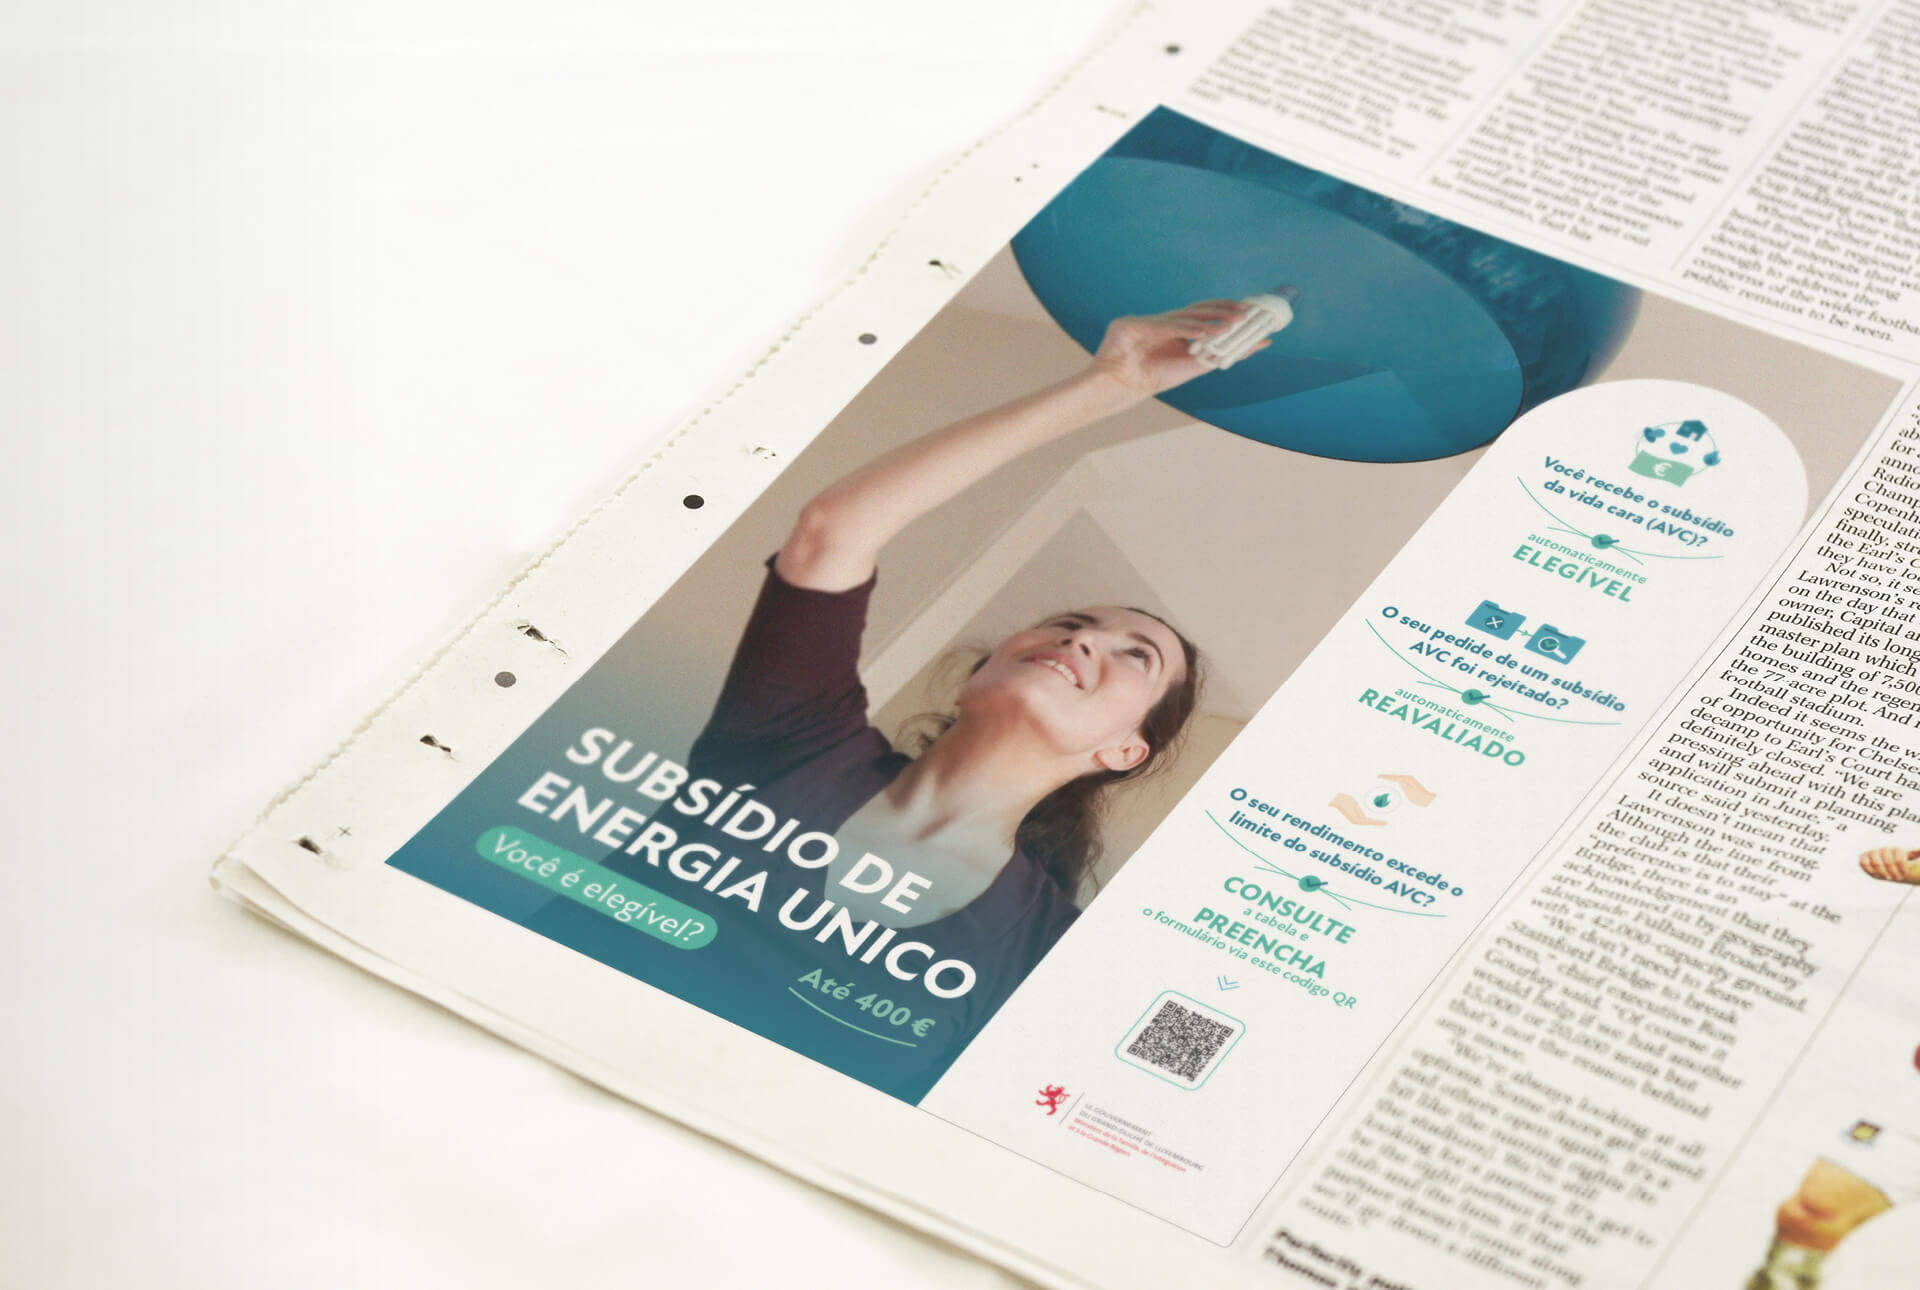 Publicité imprimée dans un journal pour la campagne Prime énergie